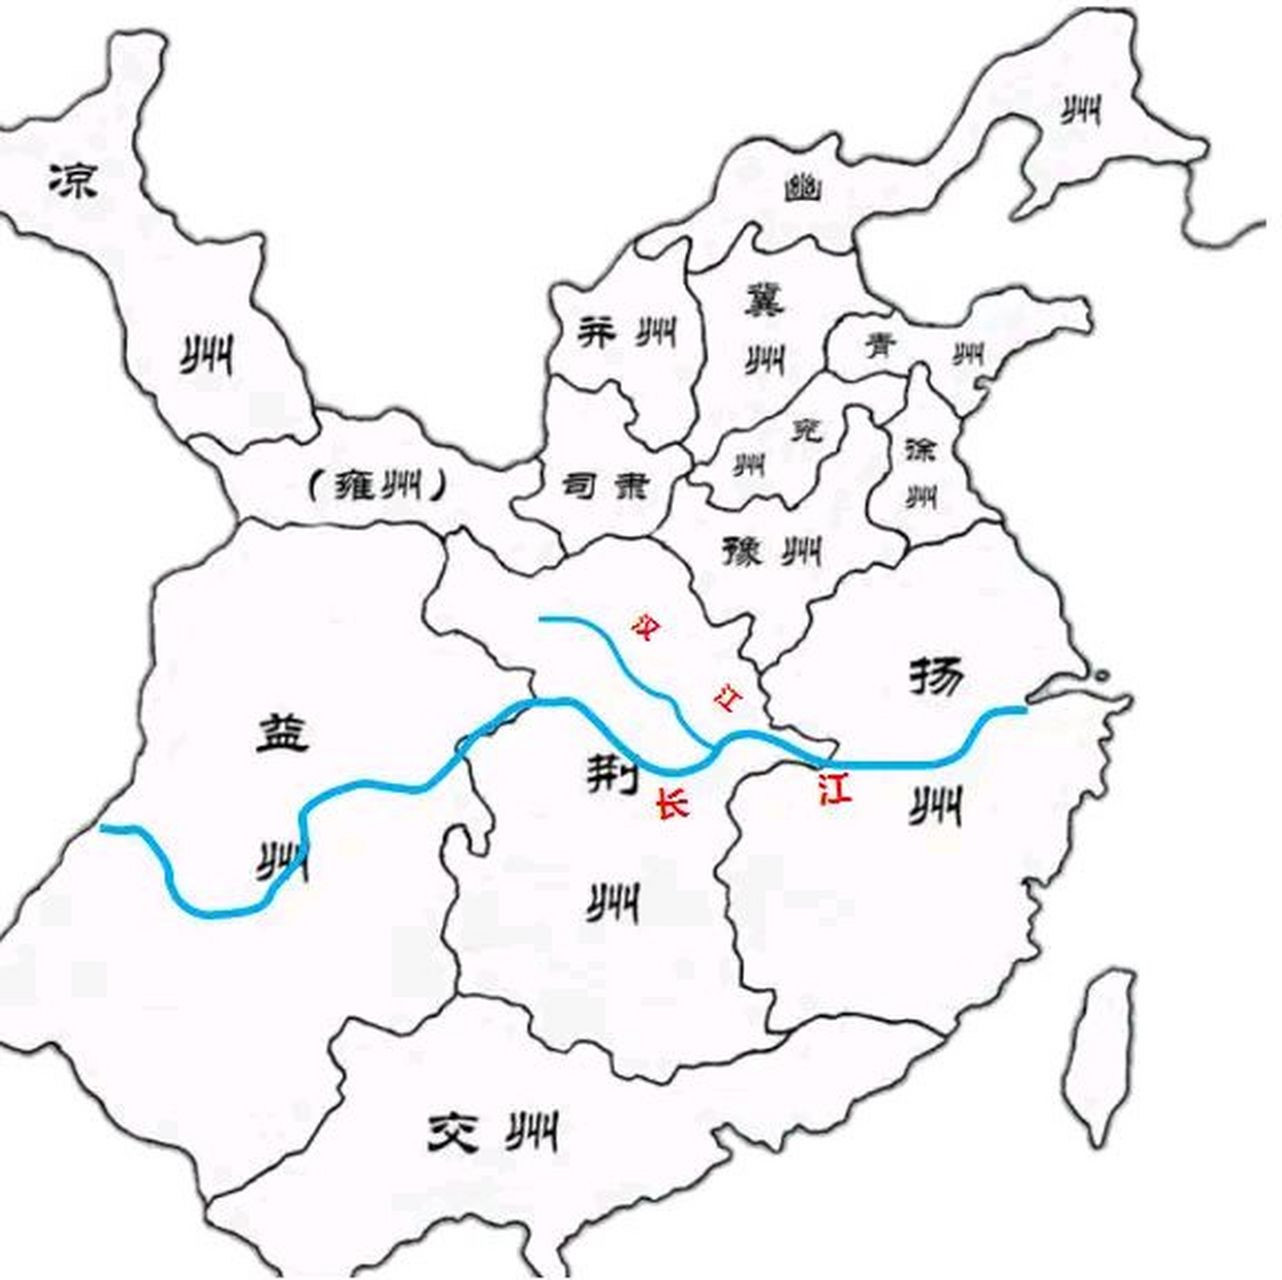 现在的荆州在以前叫江陵,而且江陵还是荆州的一部分